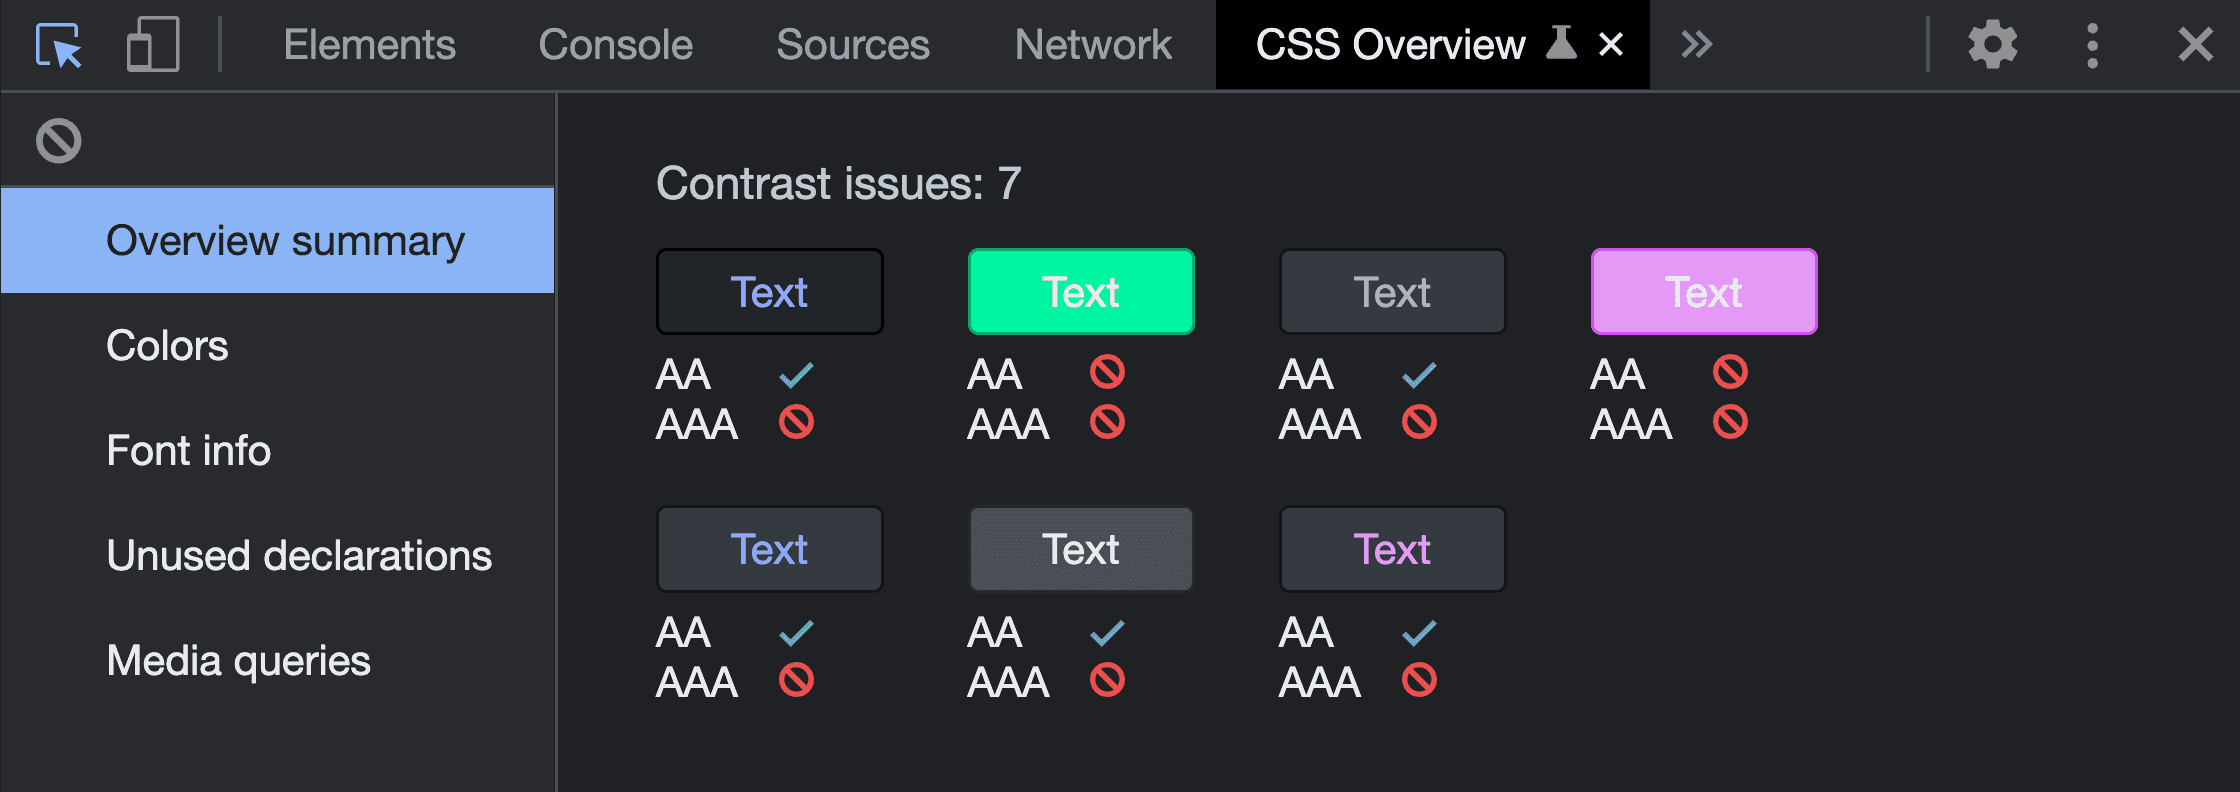 CSS Genel Bakış yakalama aracını çalıştırmayla ilgili Genel Bakış Özeti ekran görüntüsü. Rapor, keşfedilen renk eşlemelerini ve başarısız sonuçlarını gösteren 7 kontrast sorunu gösteriyor.